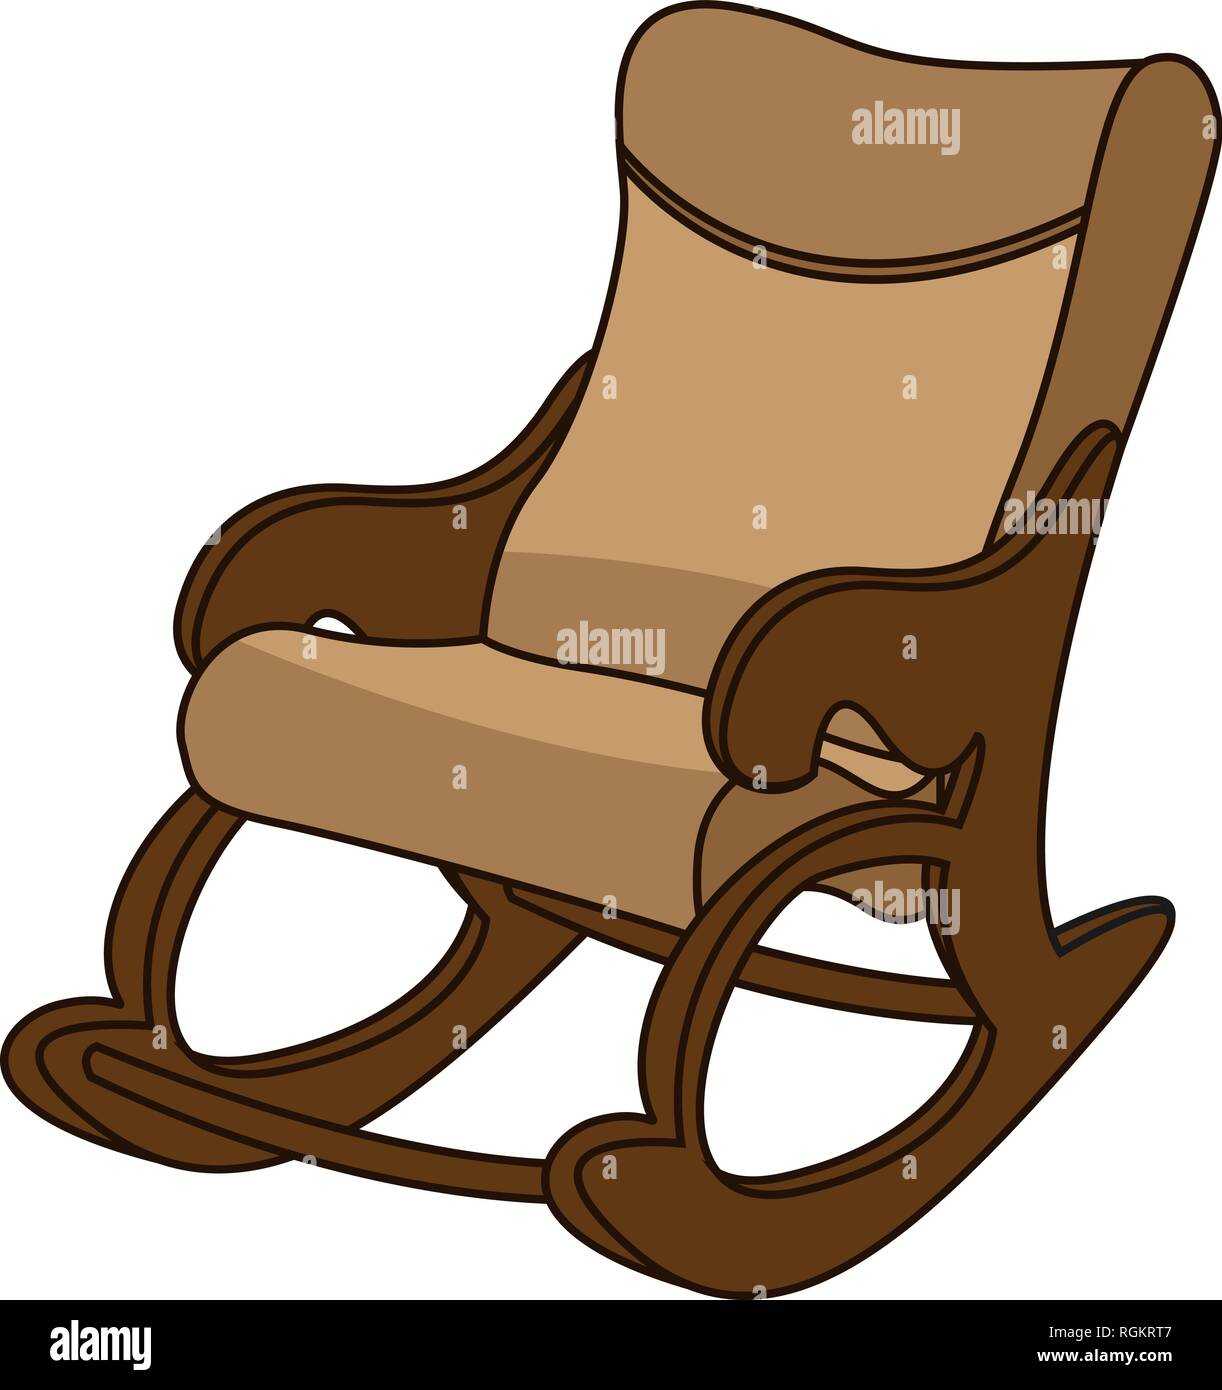 Schaukelstuhl im minimalistischen Stil, komfortable, gemütliche Sessel gepolstert mit beigem Leder. Auf weißem Hintergrund, EPS 10. Stock Vektor